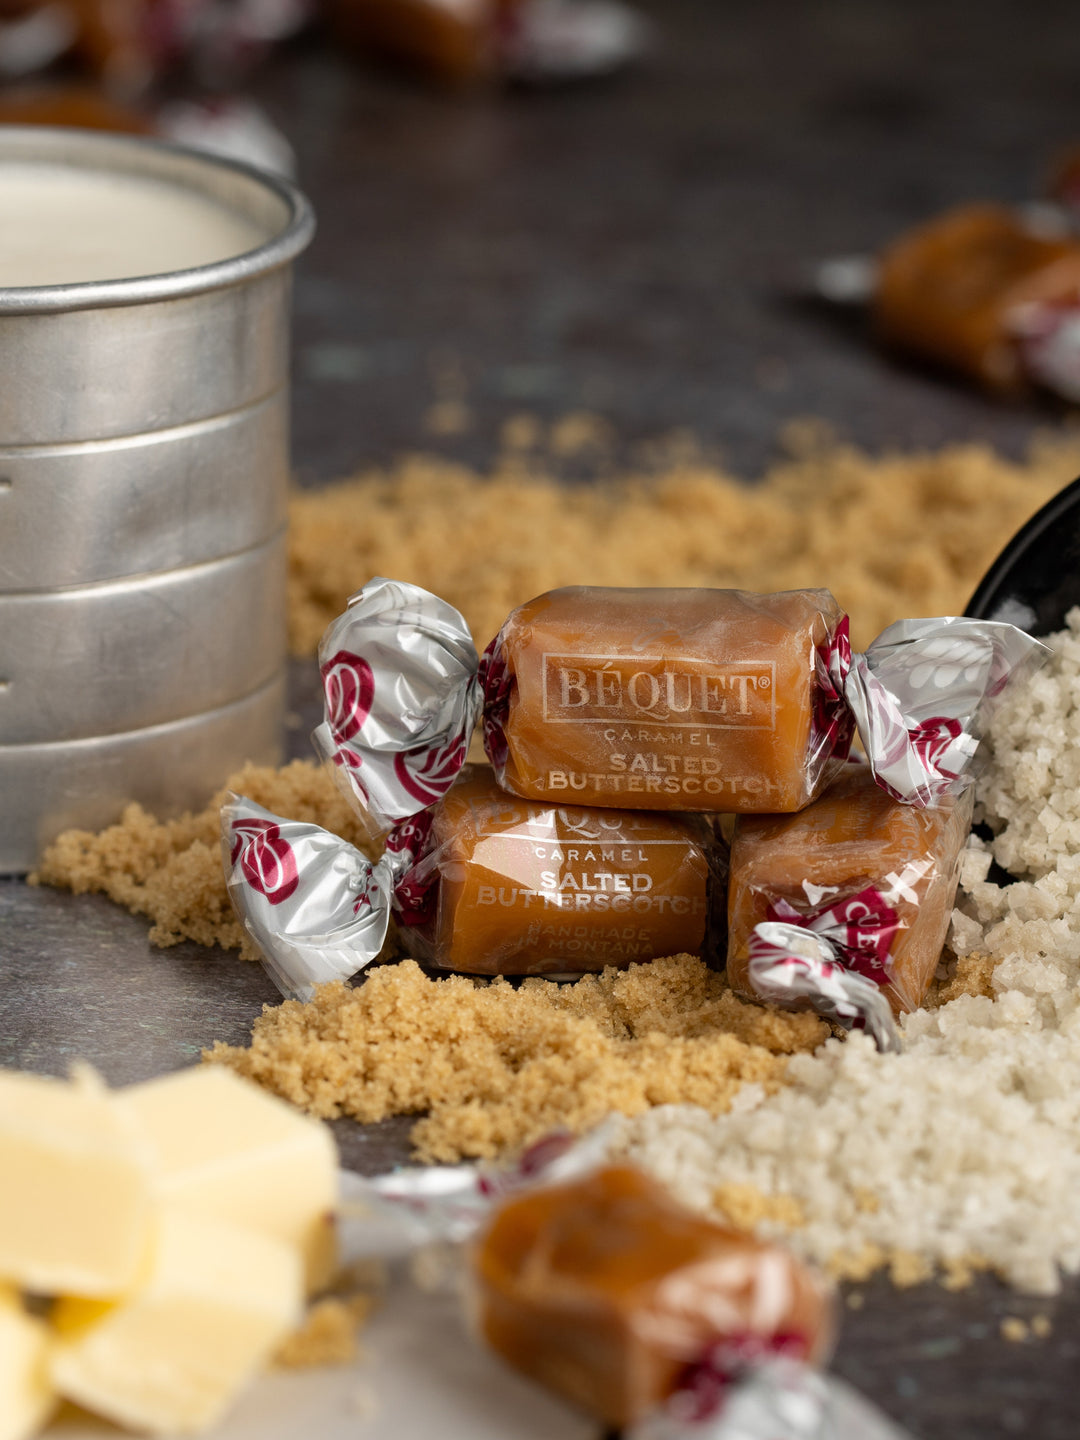 salted butterscotch bequet caramel#caramel-variety_salted-butterscotch